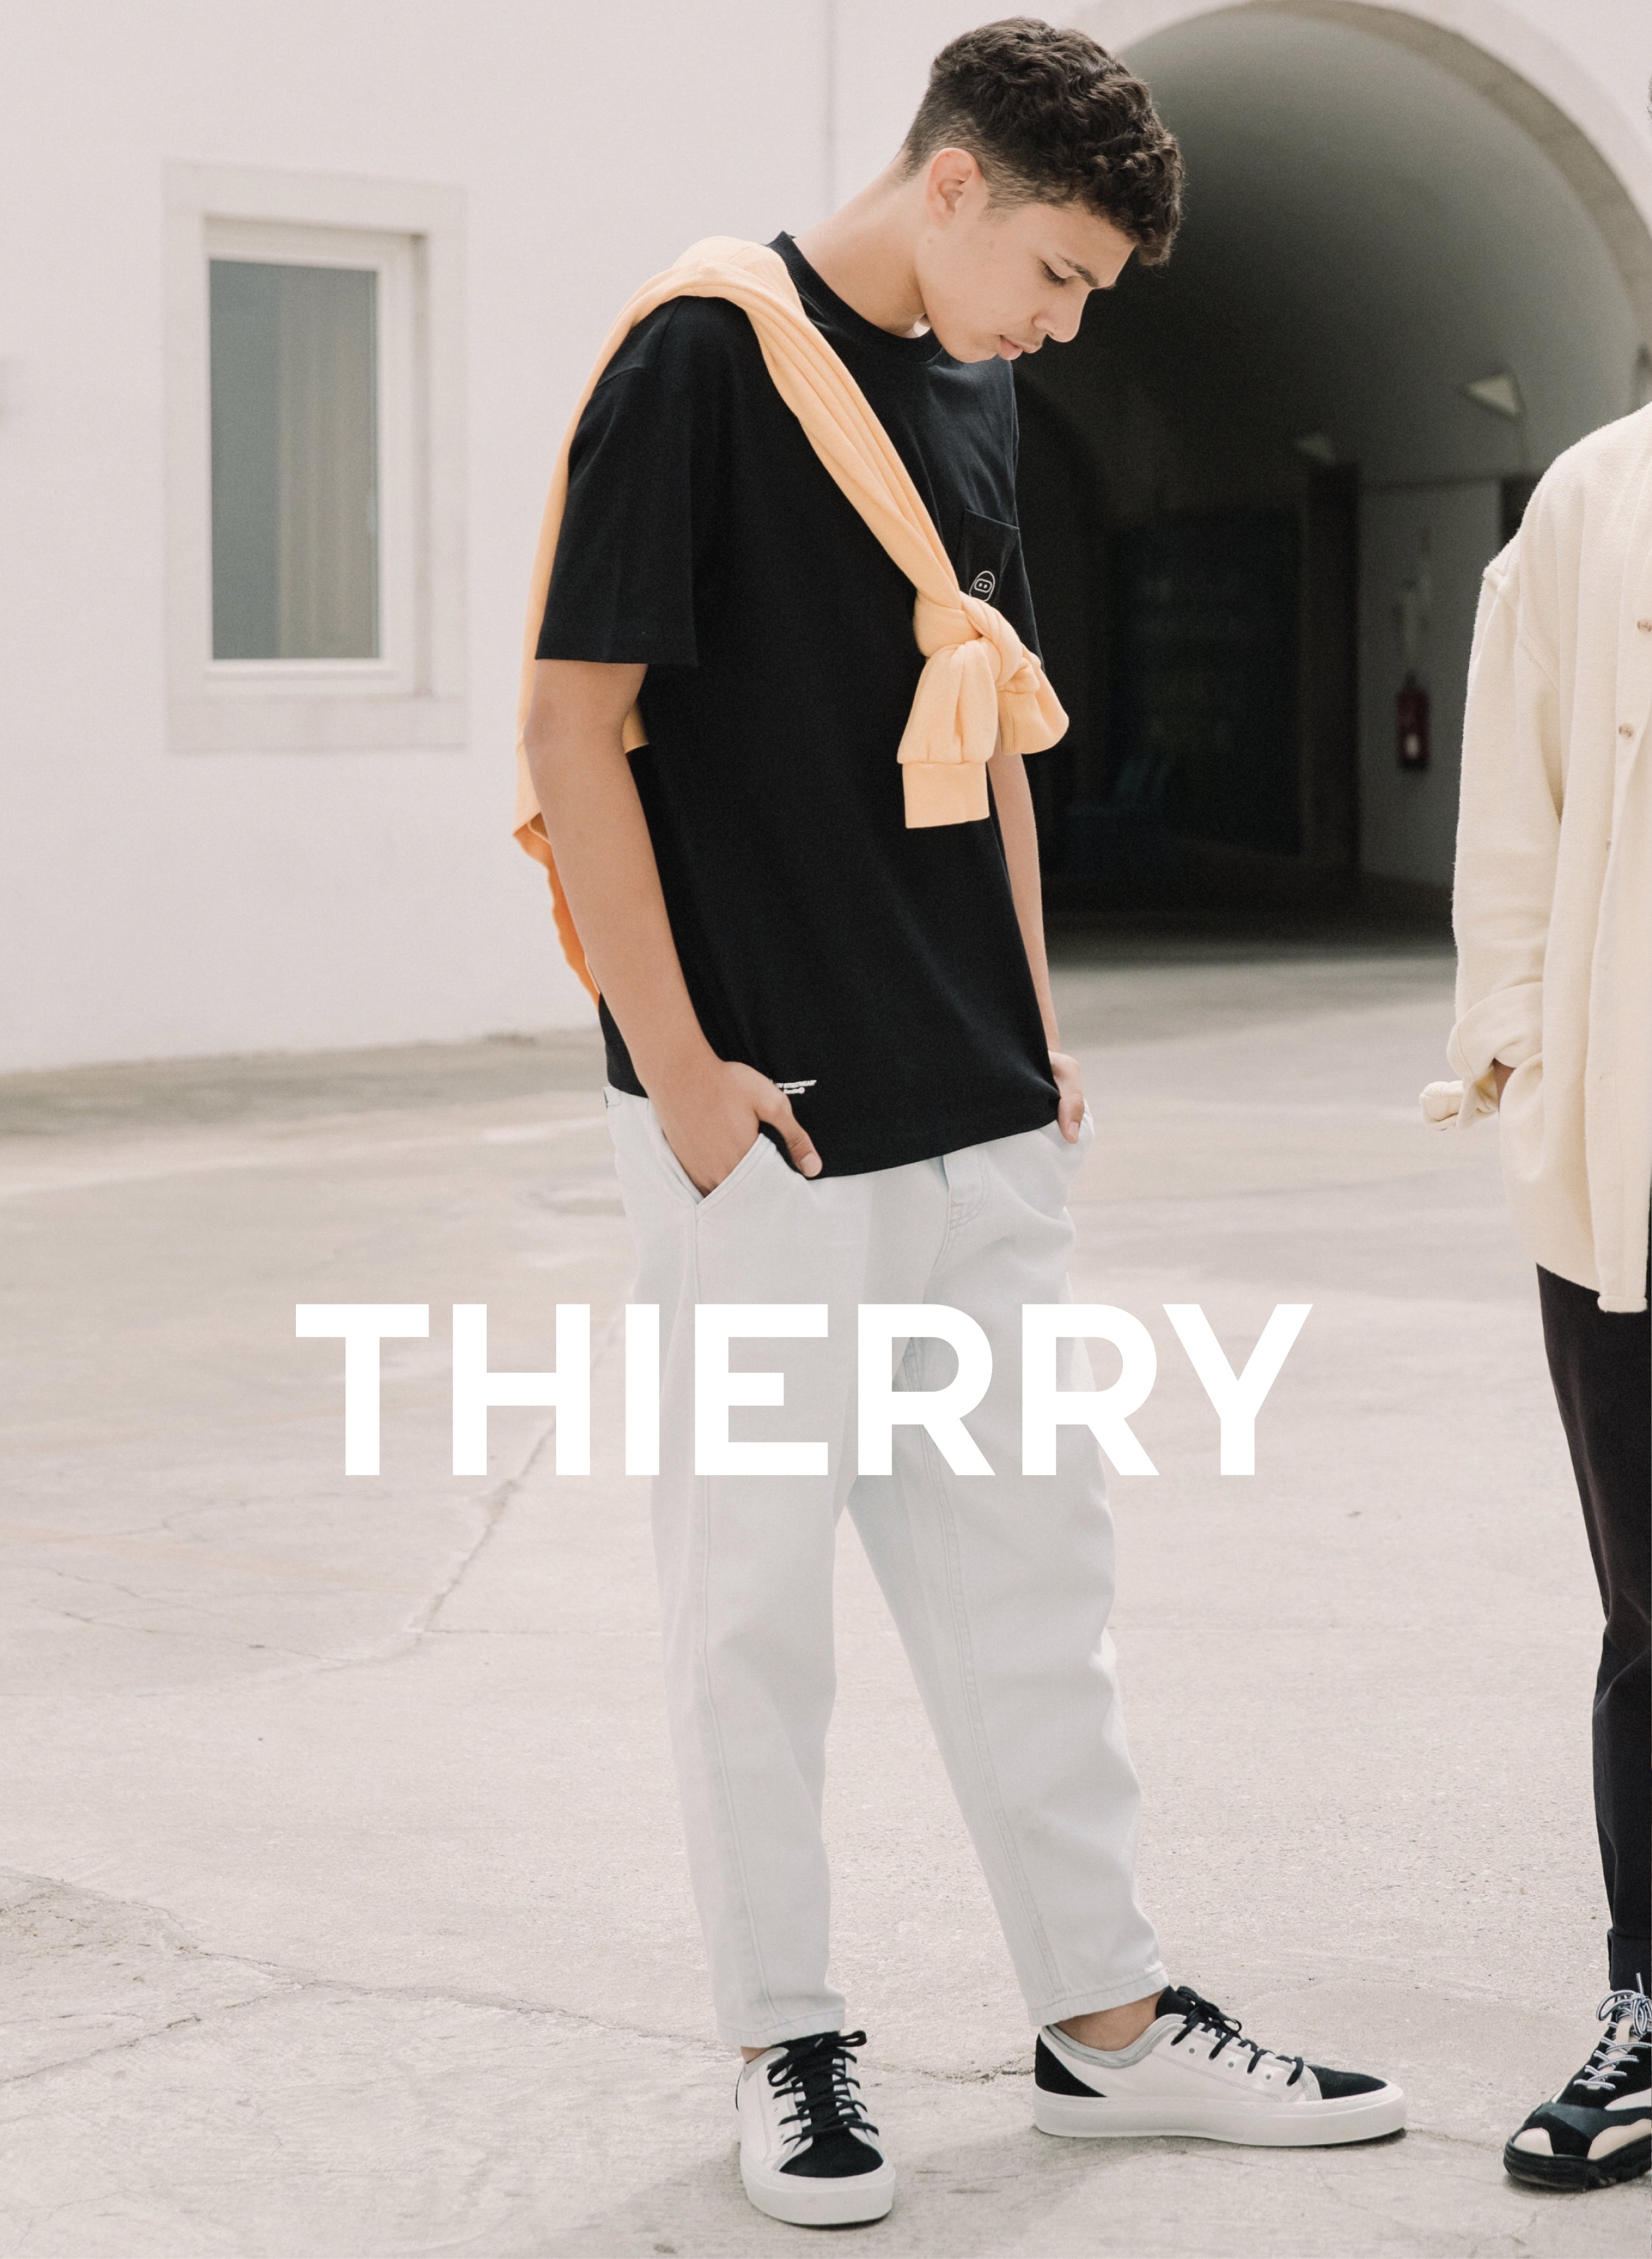 Ein Mann, der in einem schwarzen Pullover und einer weißen Hose mit maßgefertigten Schuhen nach unten schaut ThierryPräsentiert Diverge sneakers und die Förderung sozialer Auswirkungen.